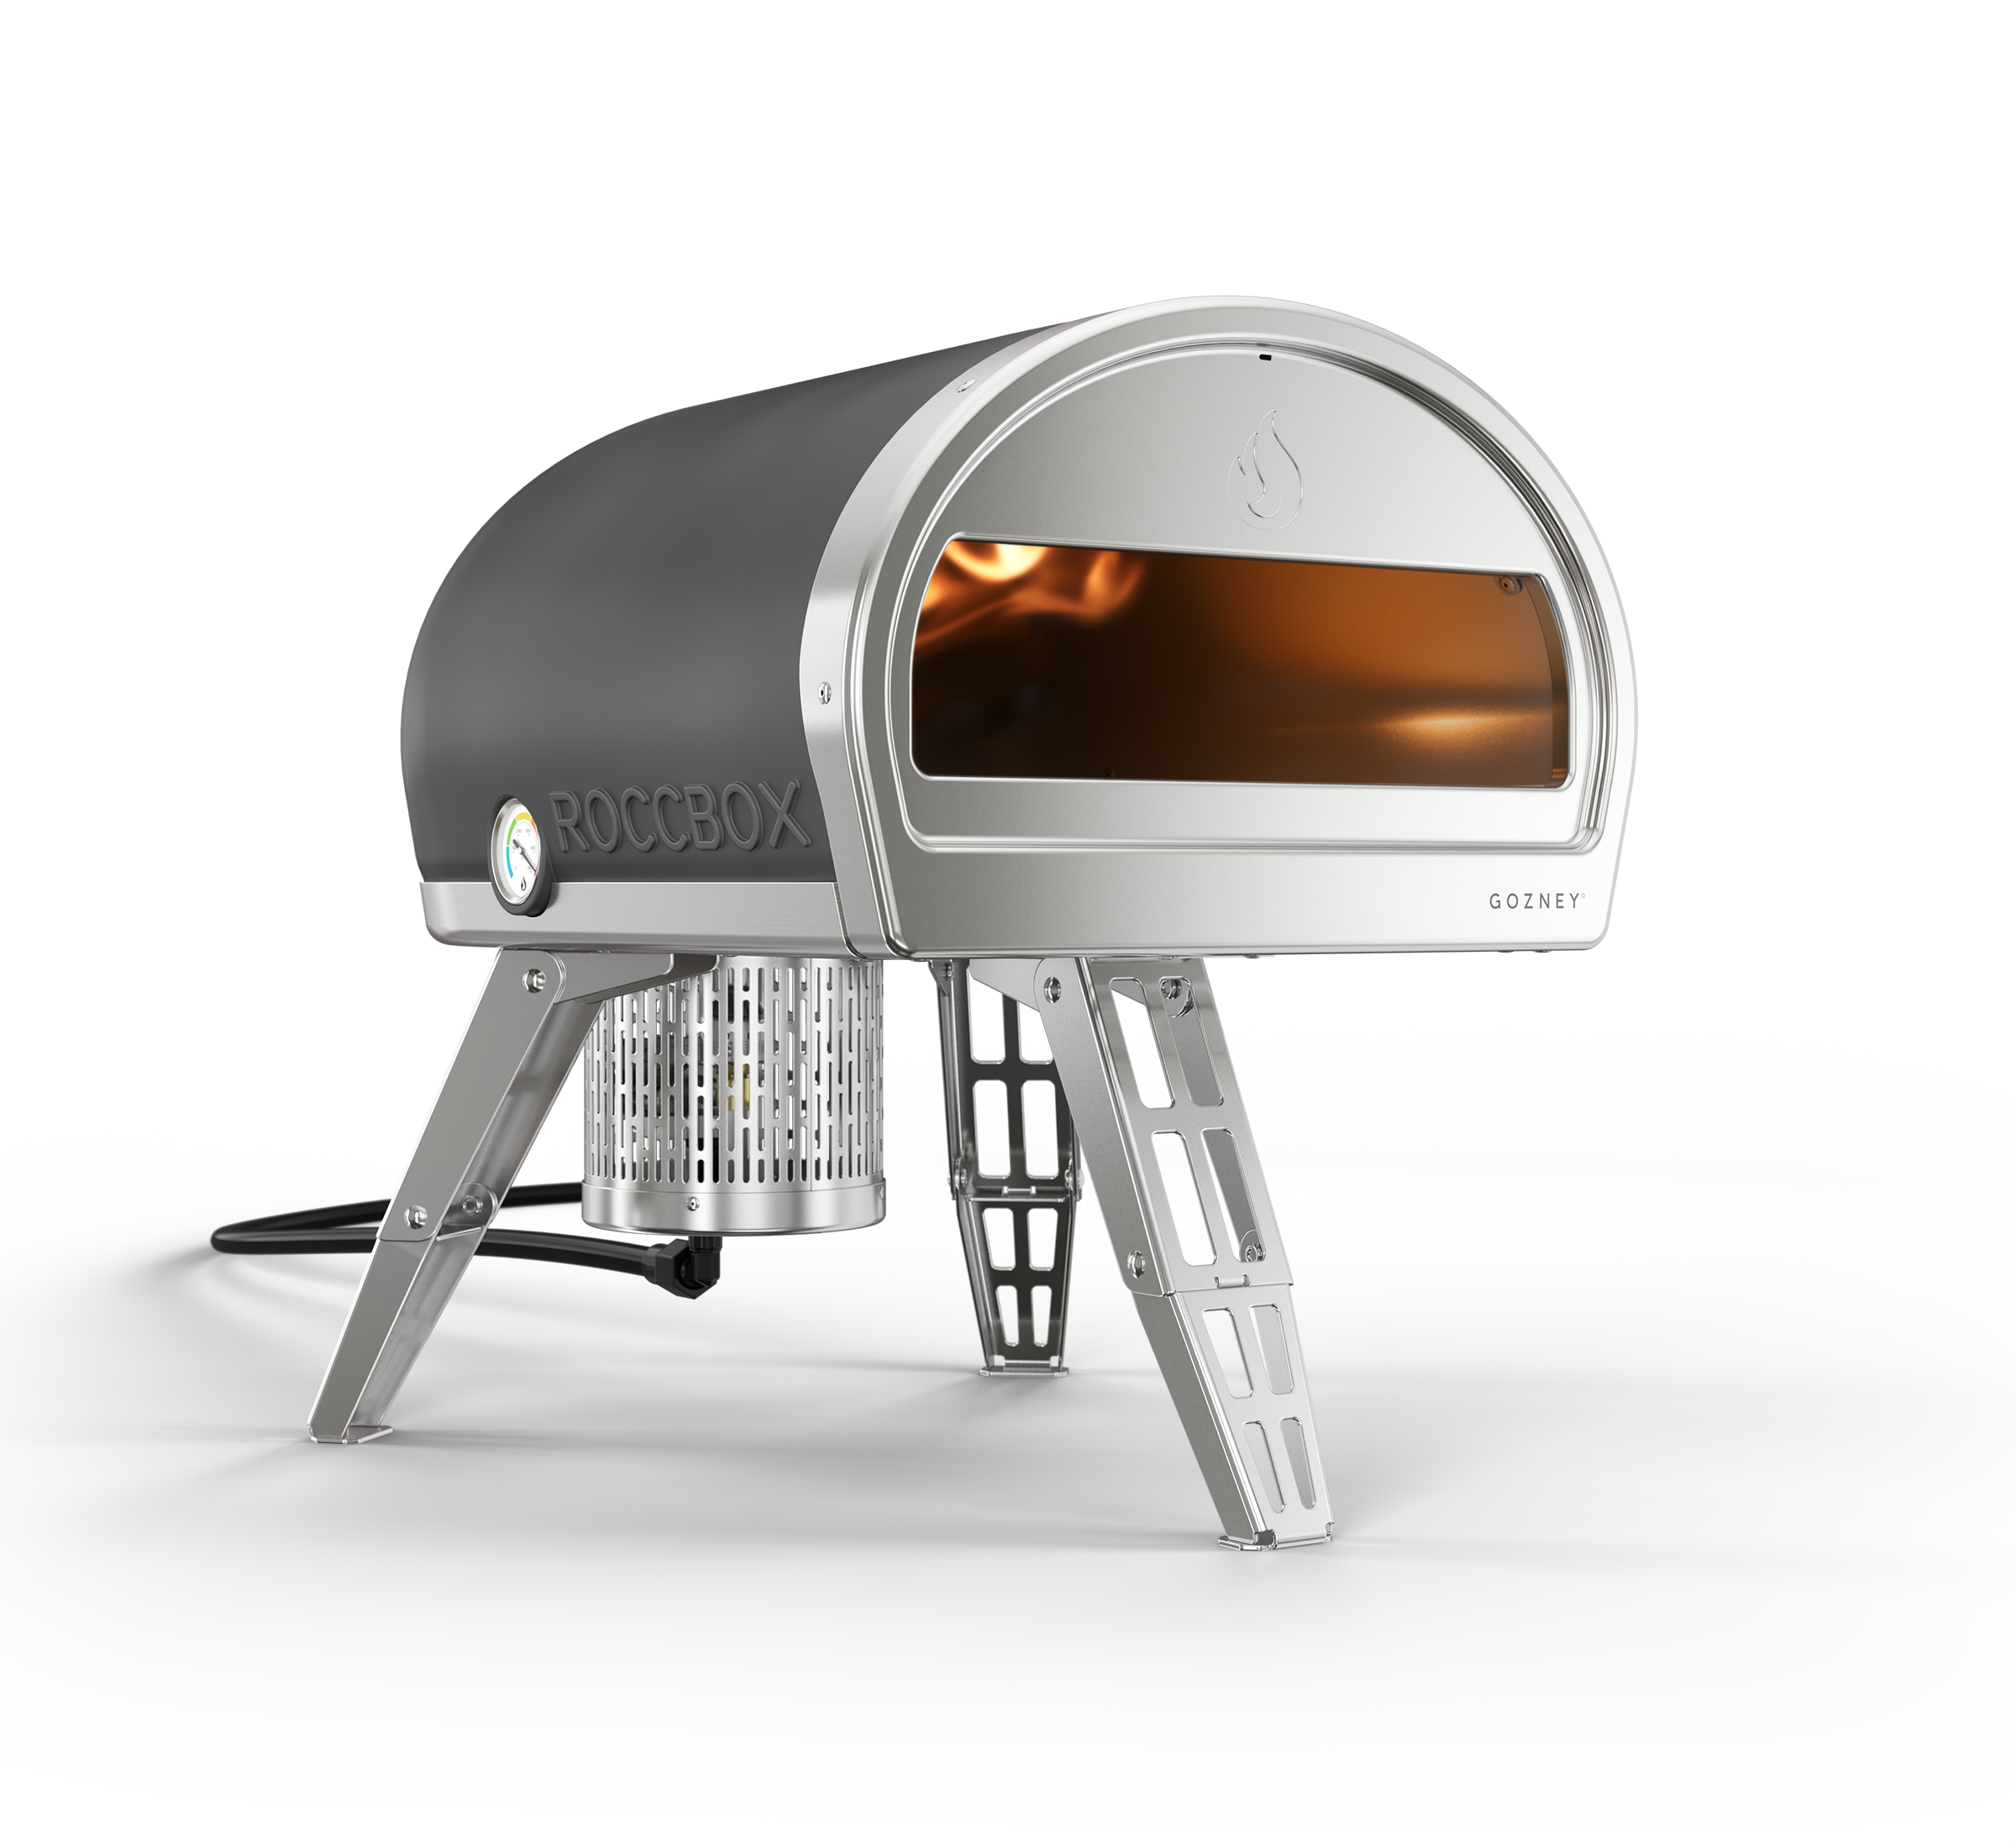 Gozney Roccbox Portable Pizza Oven - Gray Color